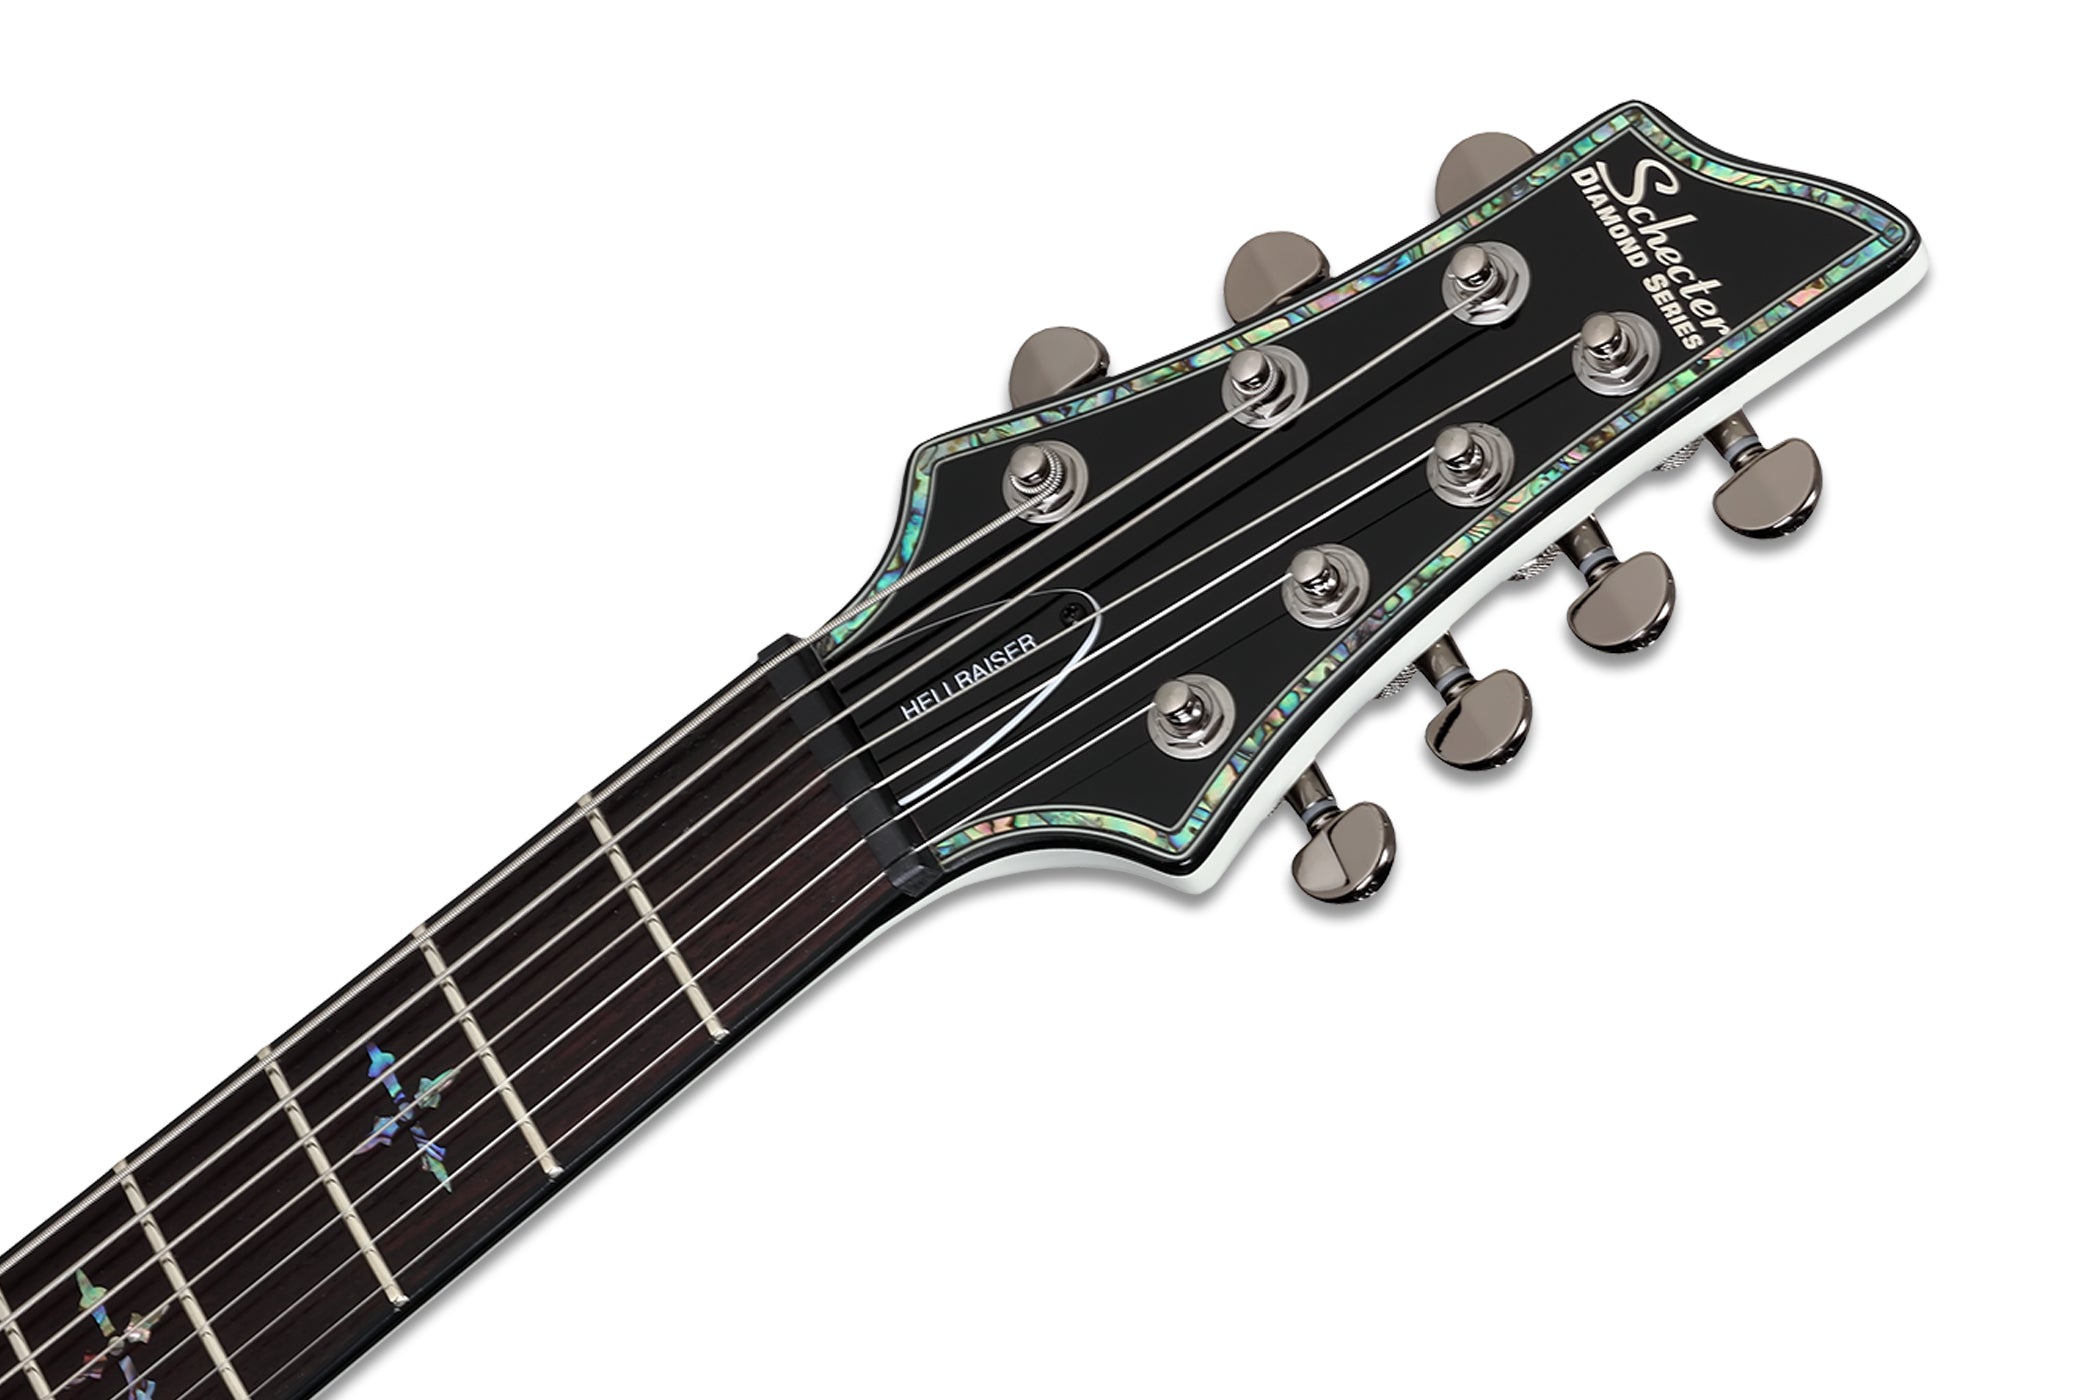 Schecter HR-C-7-WHT Hellraiser Gloss White 7 String Guitar with EMG 707TW Pickups 1810-SHC